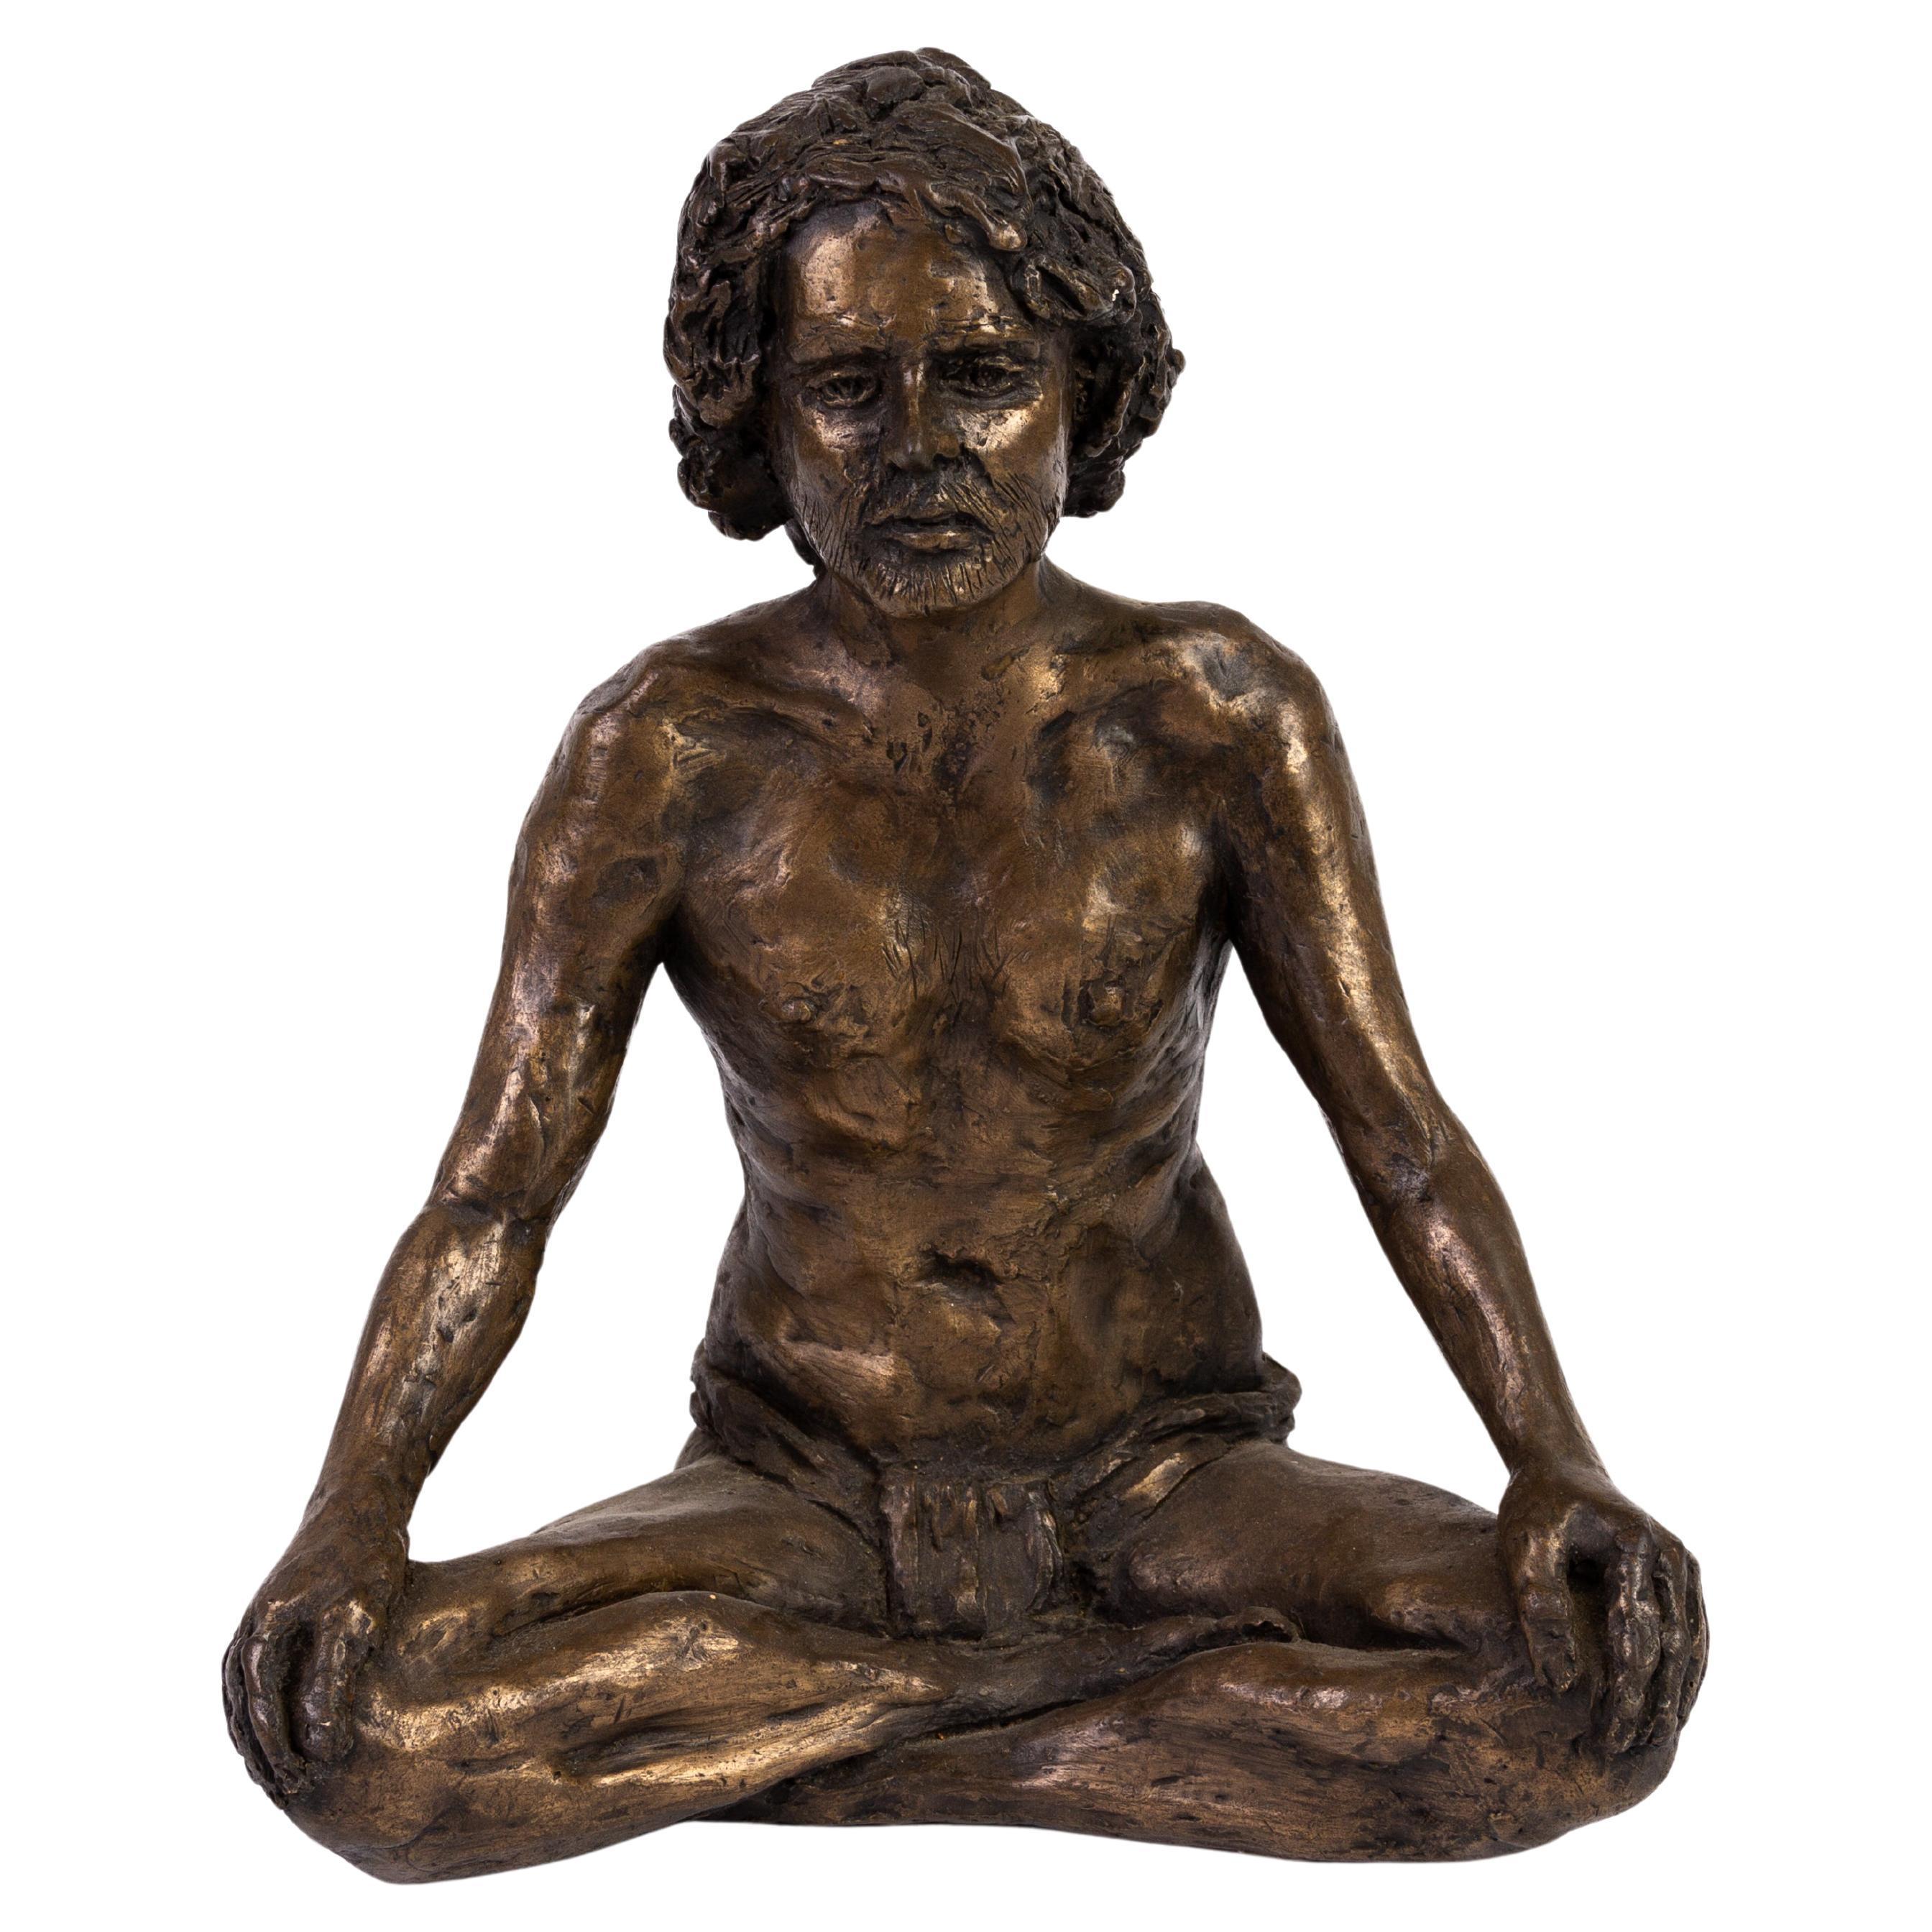 Peter James Wild (1933-2015) Bronzed Resin Sculpture 